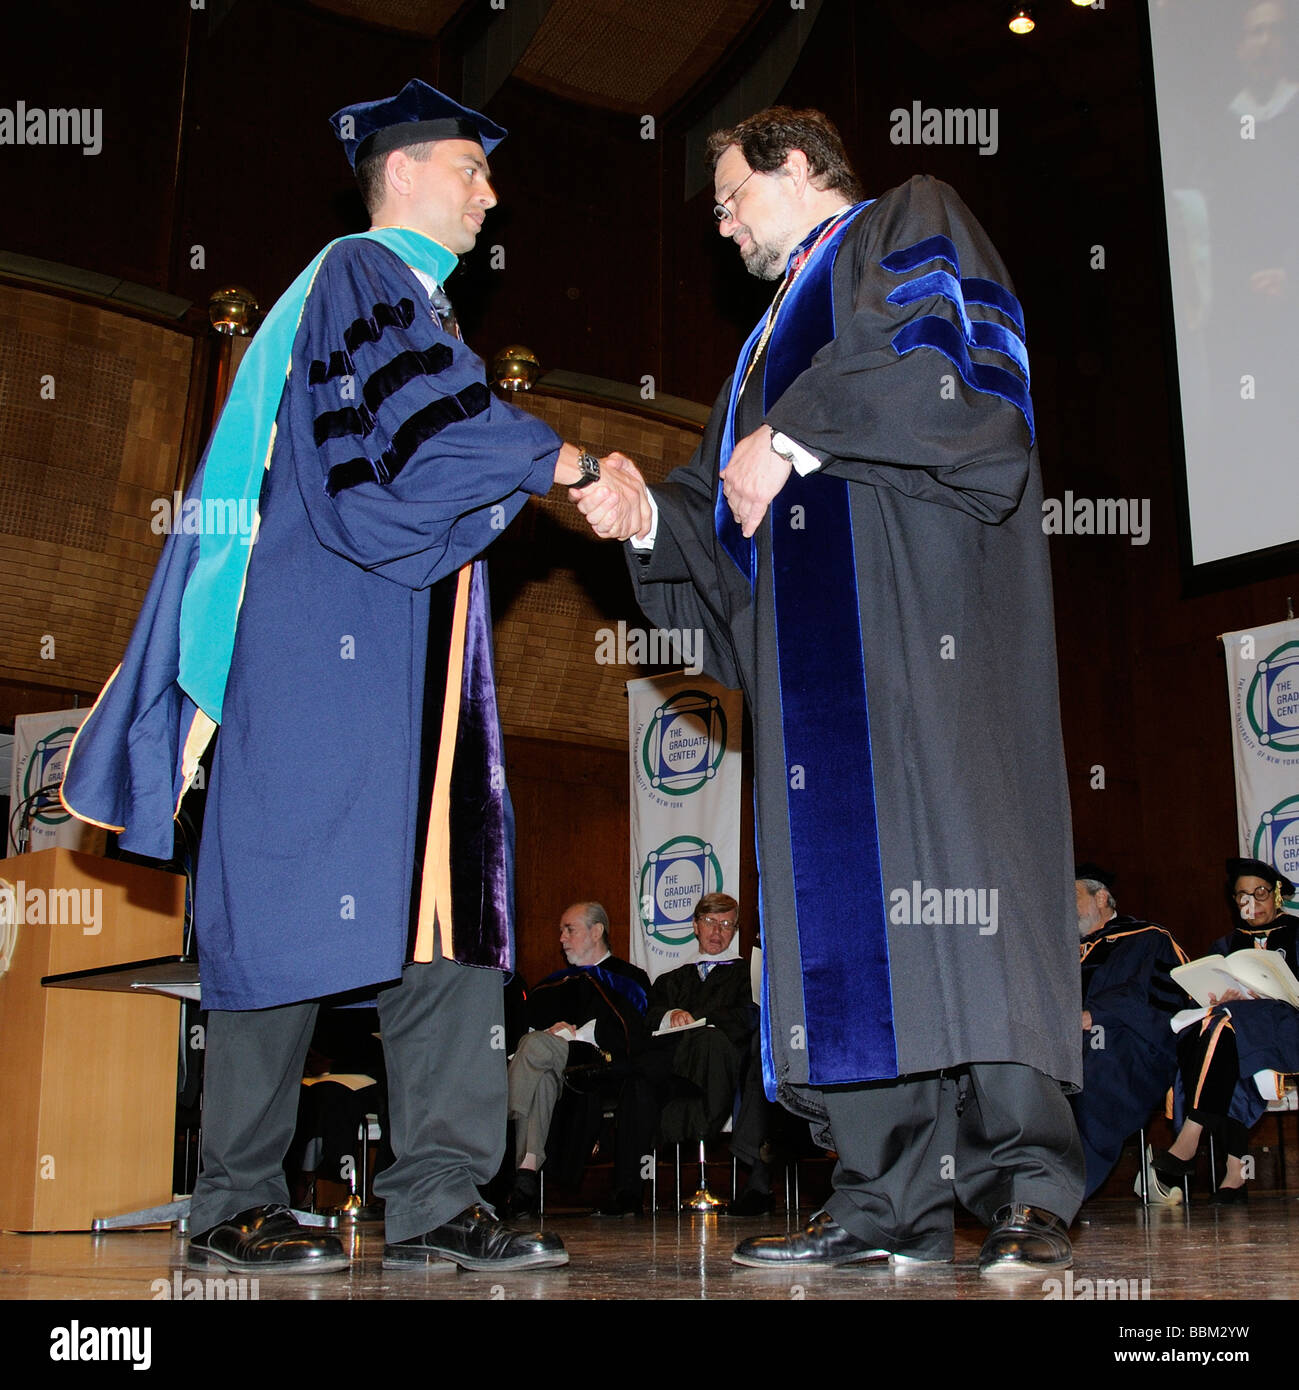 Cérémonie de remise de diplômes d'études supérieures d'hommes wearing cap and gown avec les responsables de l'Université de la scène Banque D'Images